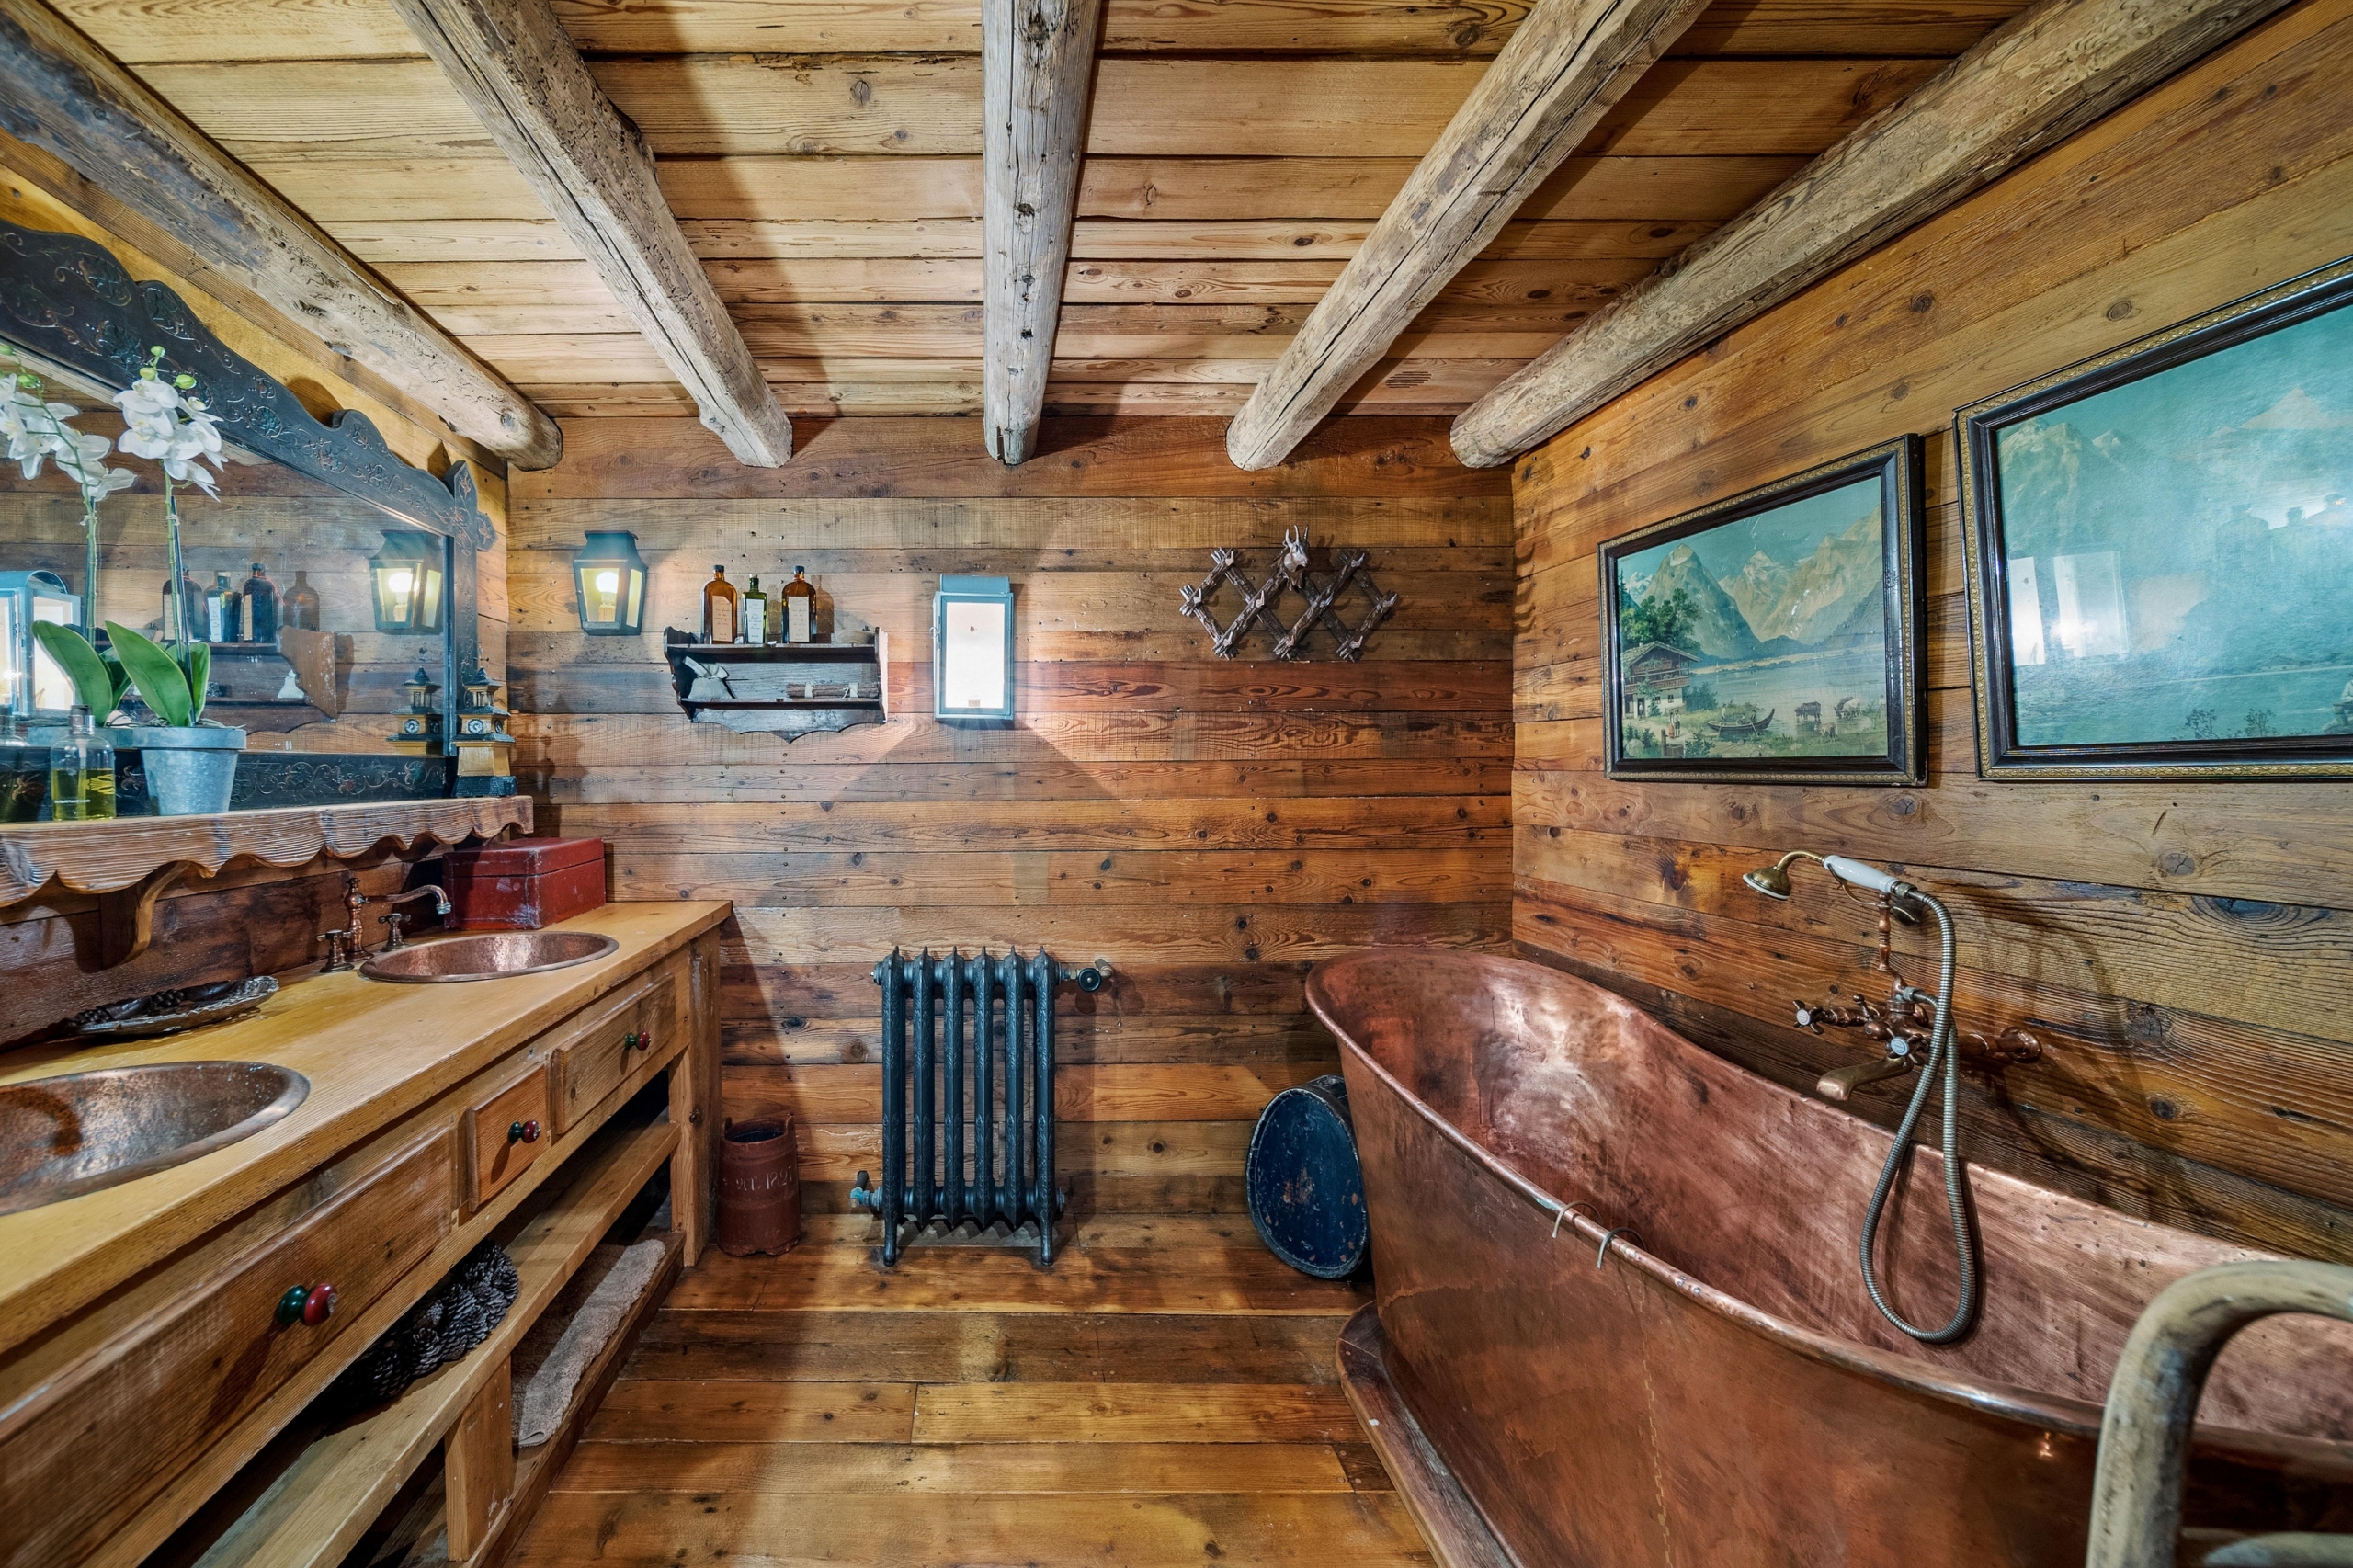 Phòng tắm này có bồn rửa và bồn tắm bằng đồng cổ điển, máy sưởi tản nhiệt, sàn, tường, và trần nhà bằng gỗ là nơi lý tưởng để tận hưởng ngâm mình trong nước nóng sau một ngày trượt tuyết. (Ảnh: Đăng dưới sự cho phép của Sotheby’s Concierge Auctions)